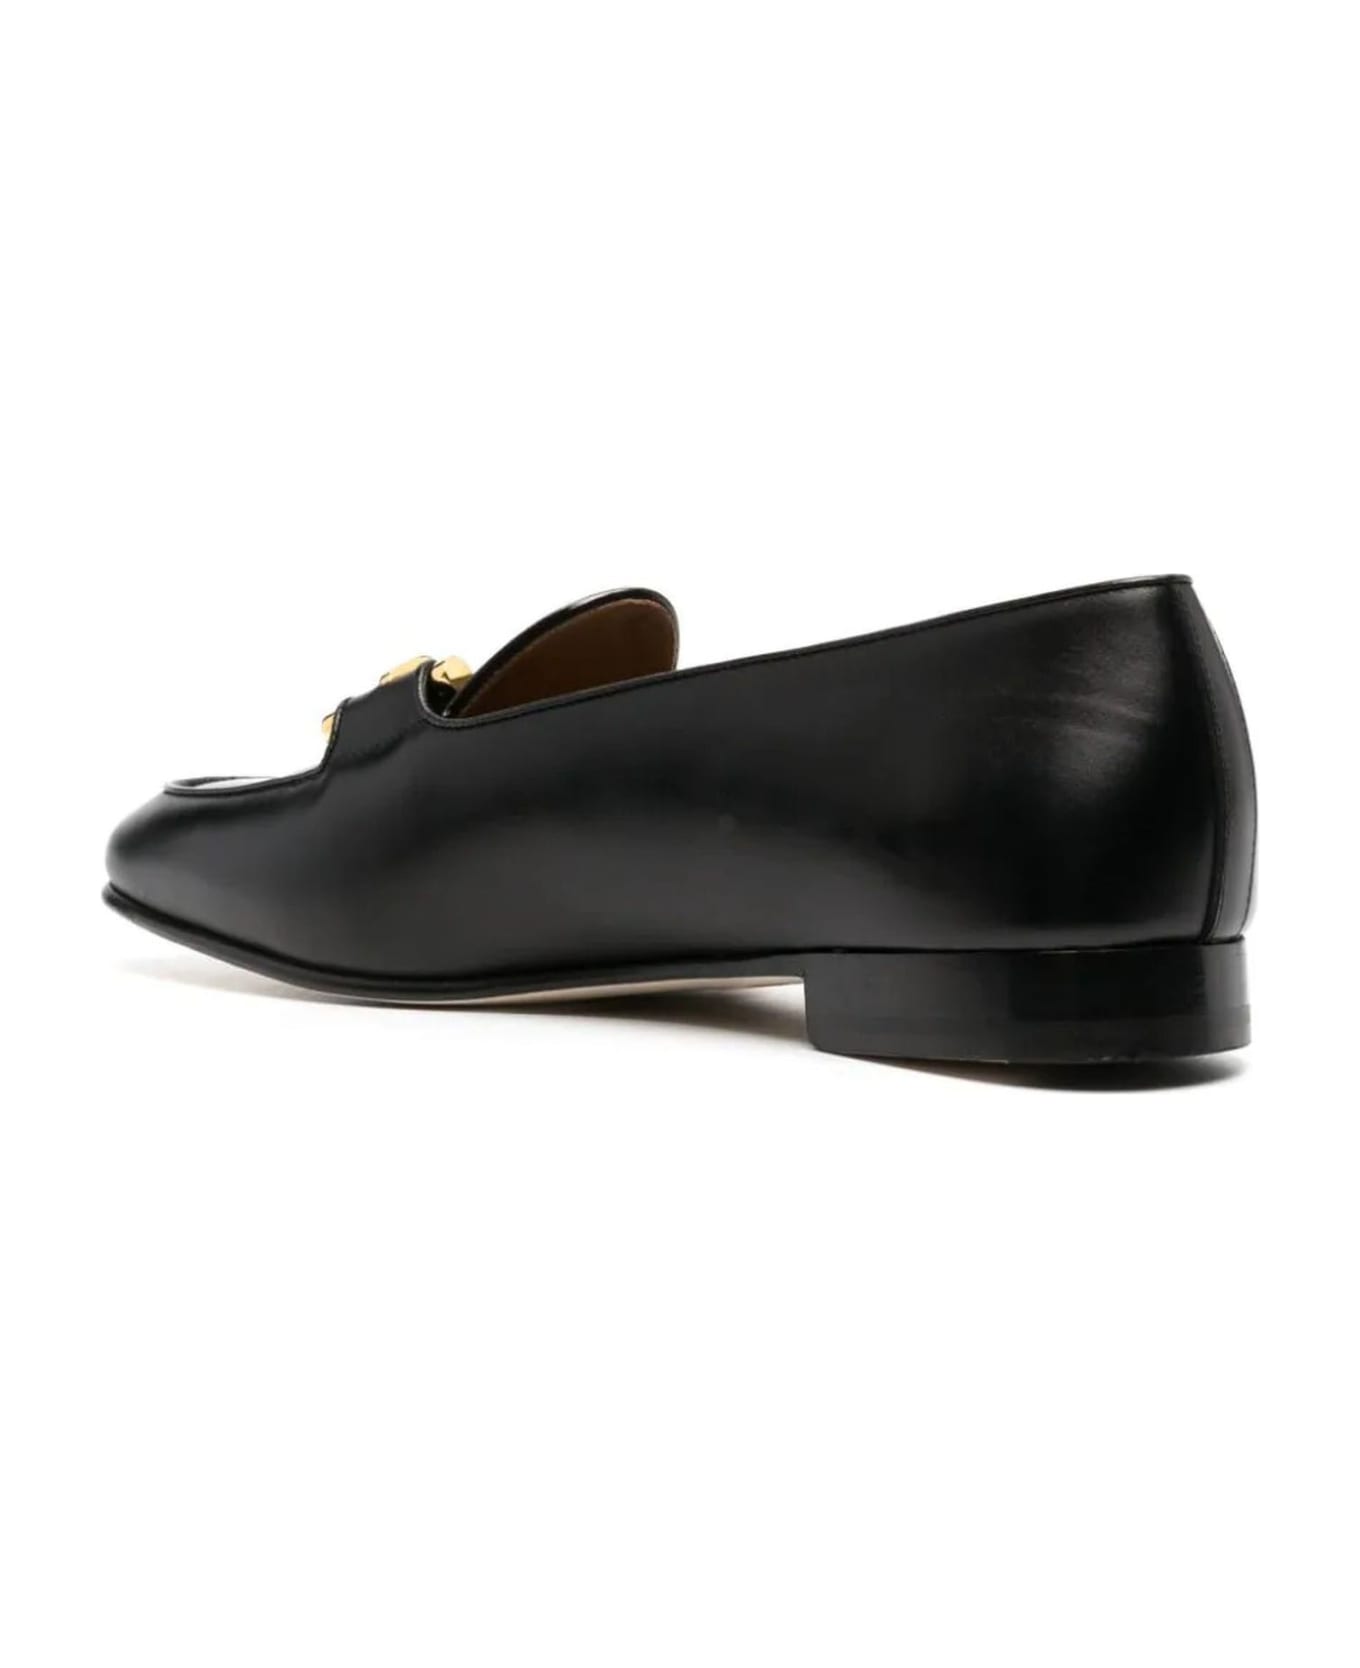 Edhen Milano Black Calf Leather Comporta Loafers - Nero